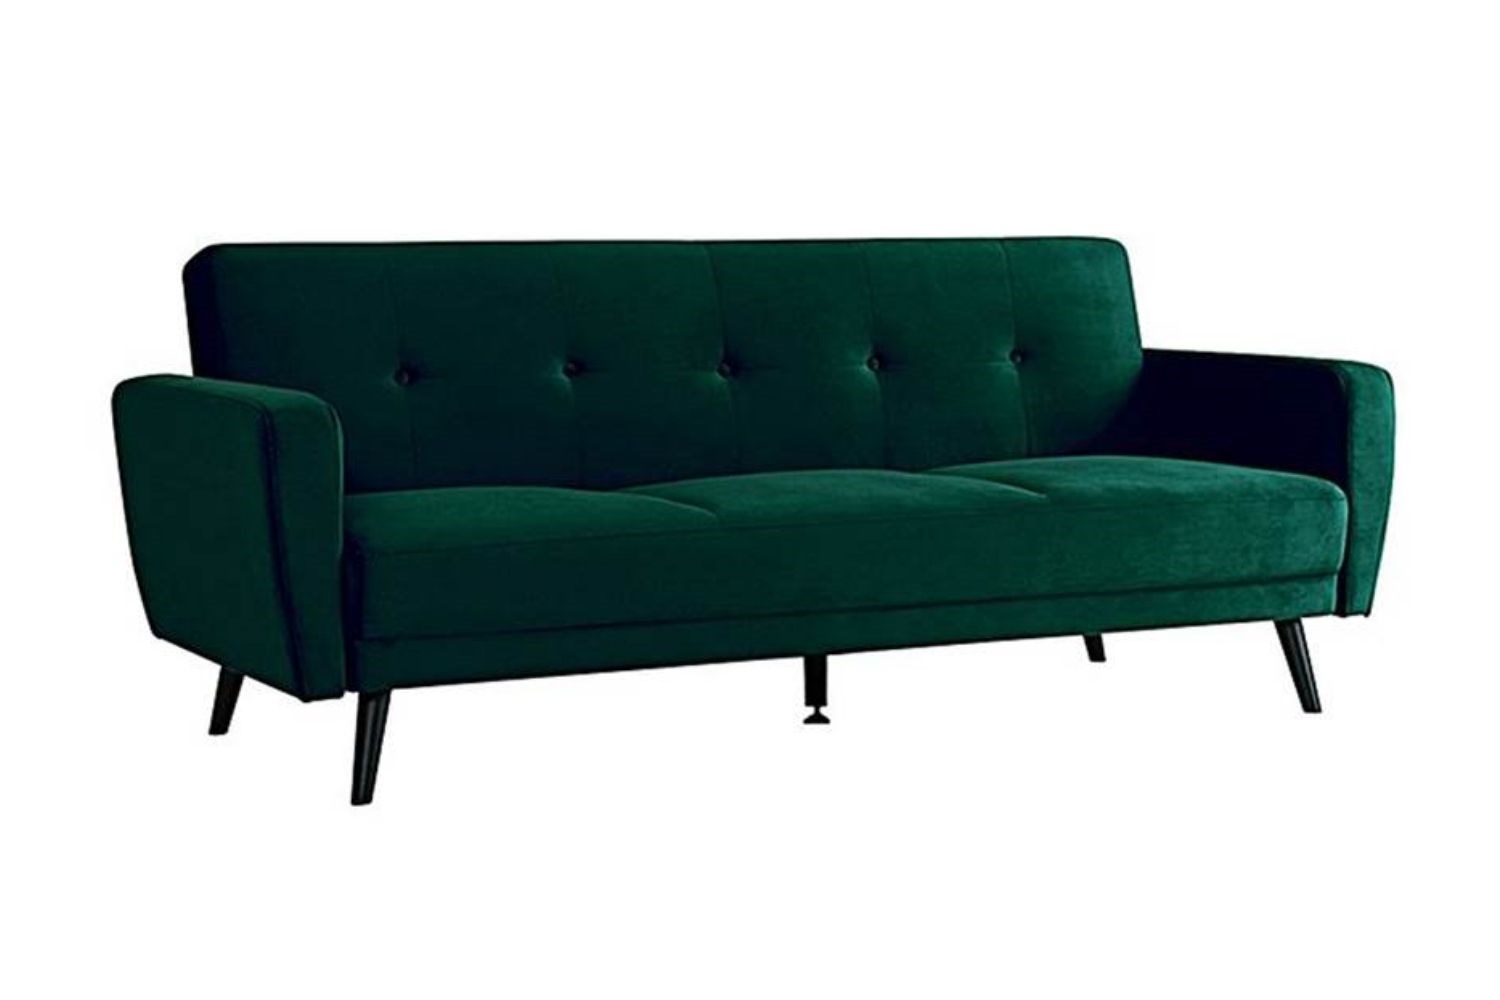 Sofa Bed5 ?width=720¢er=0.0,0.0